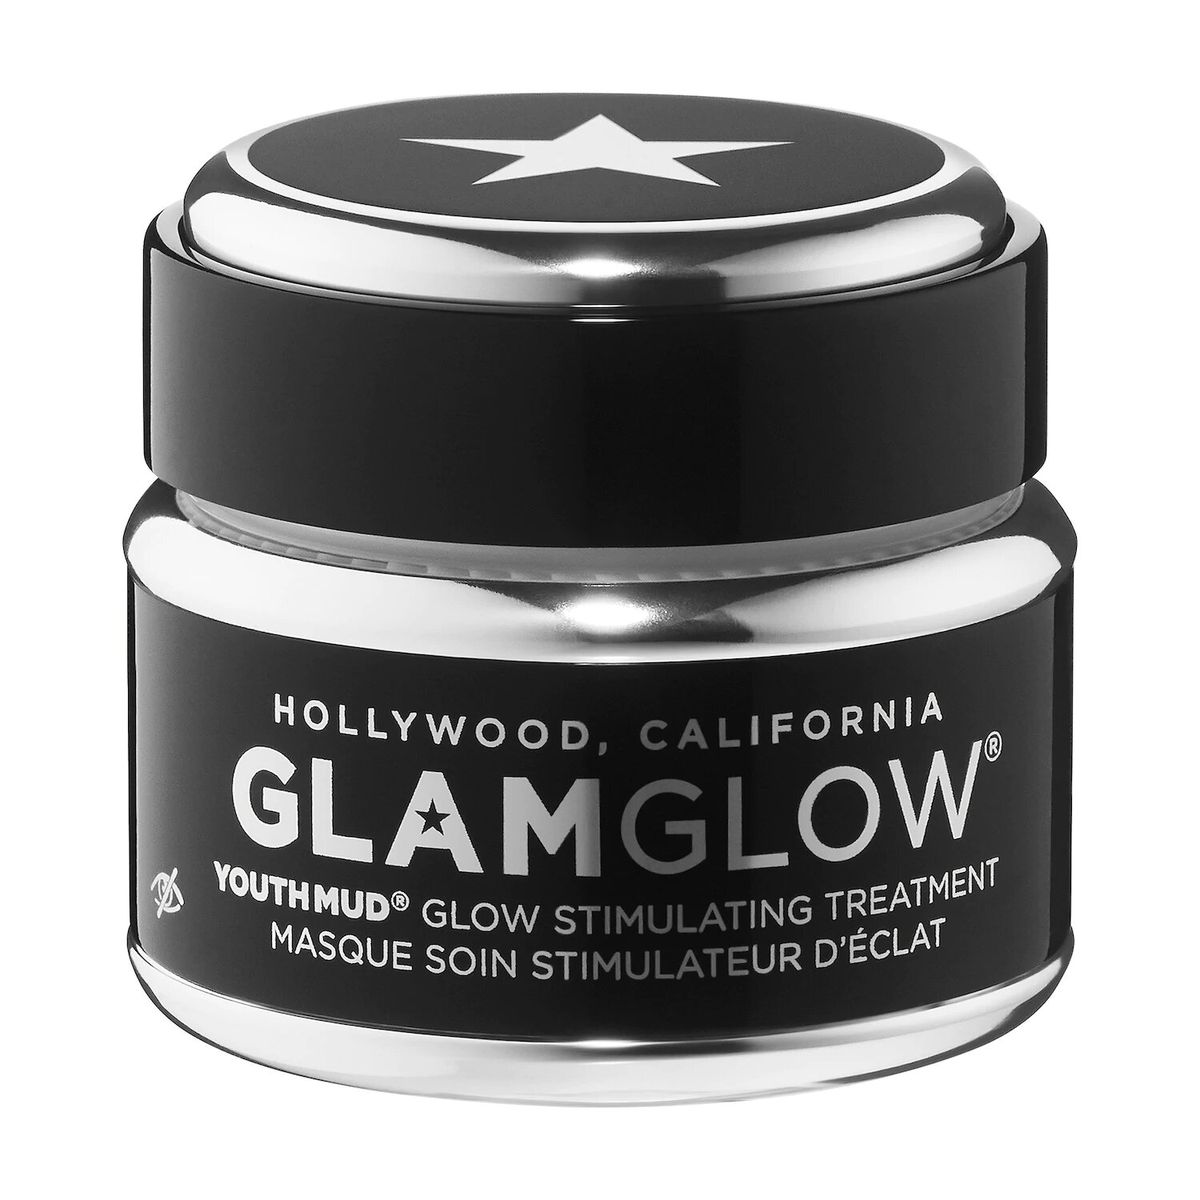 GLAMGLOW YOUTHMUD Glow Stimulating & Exfoliating Treatment Mask